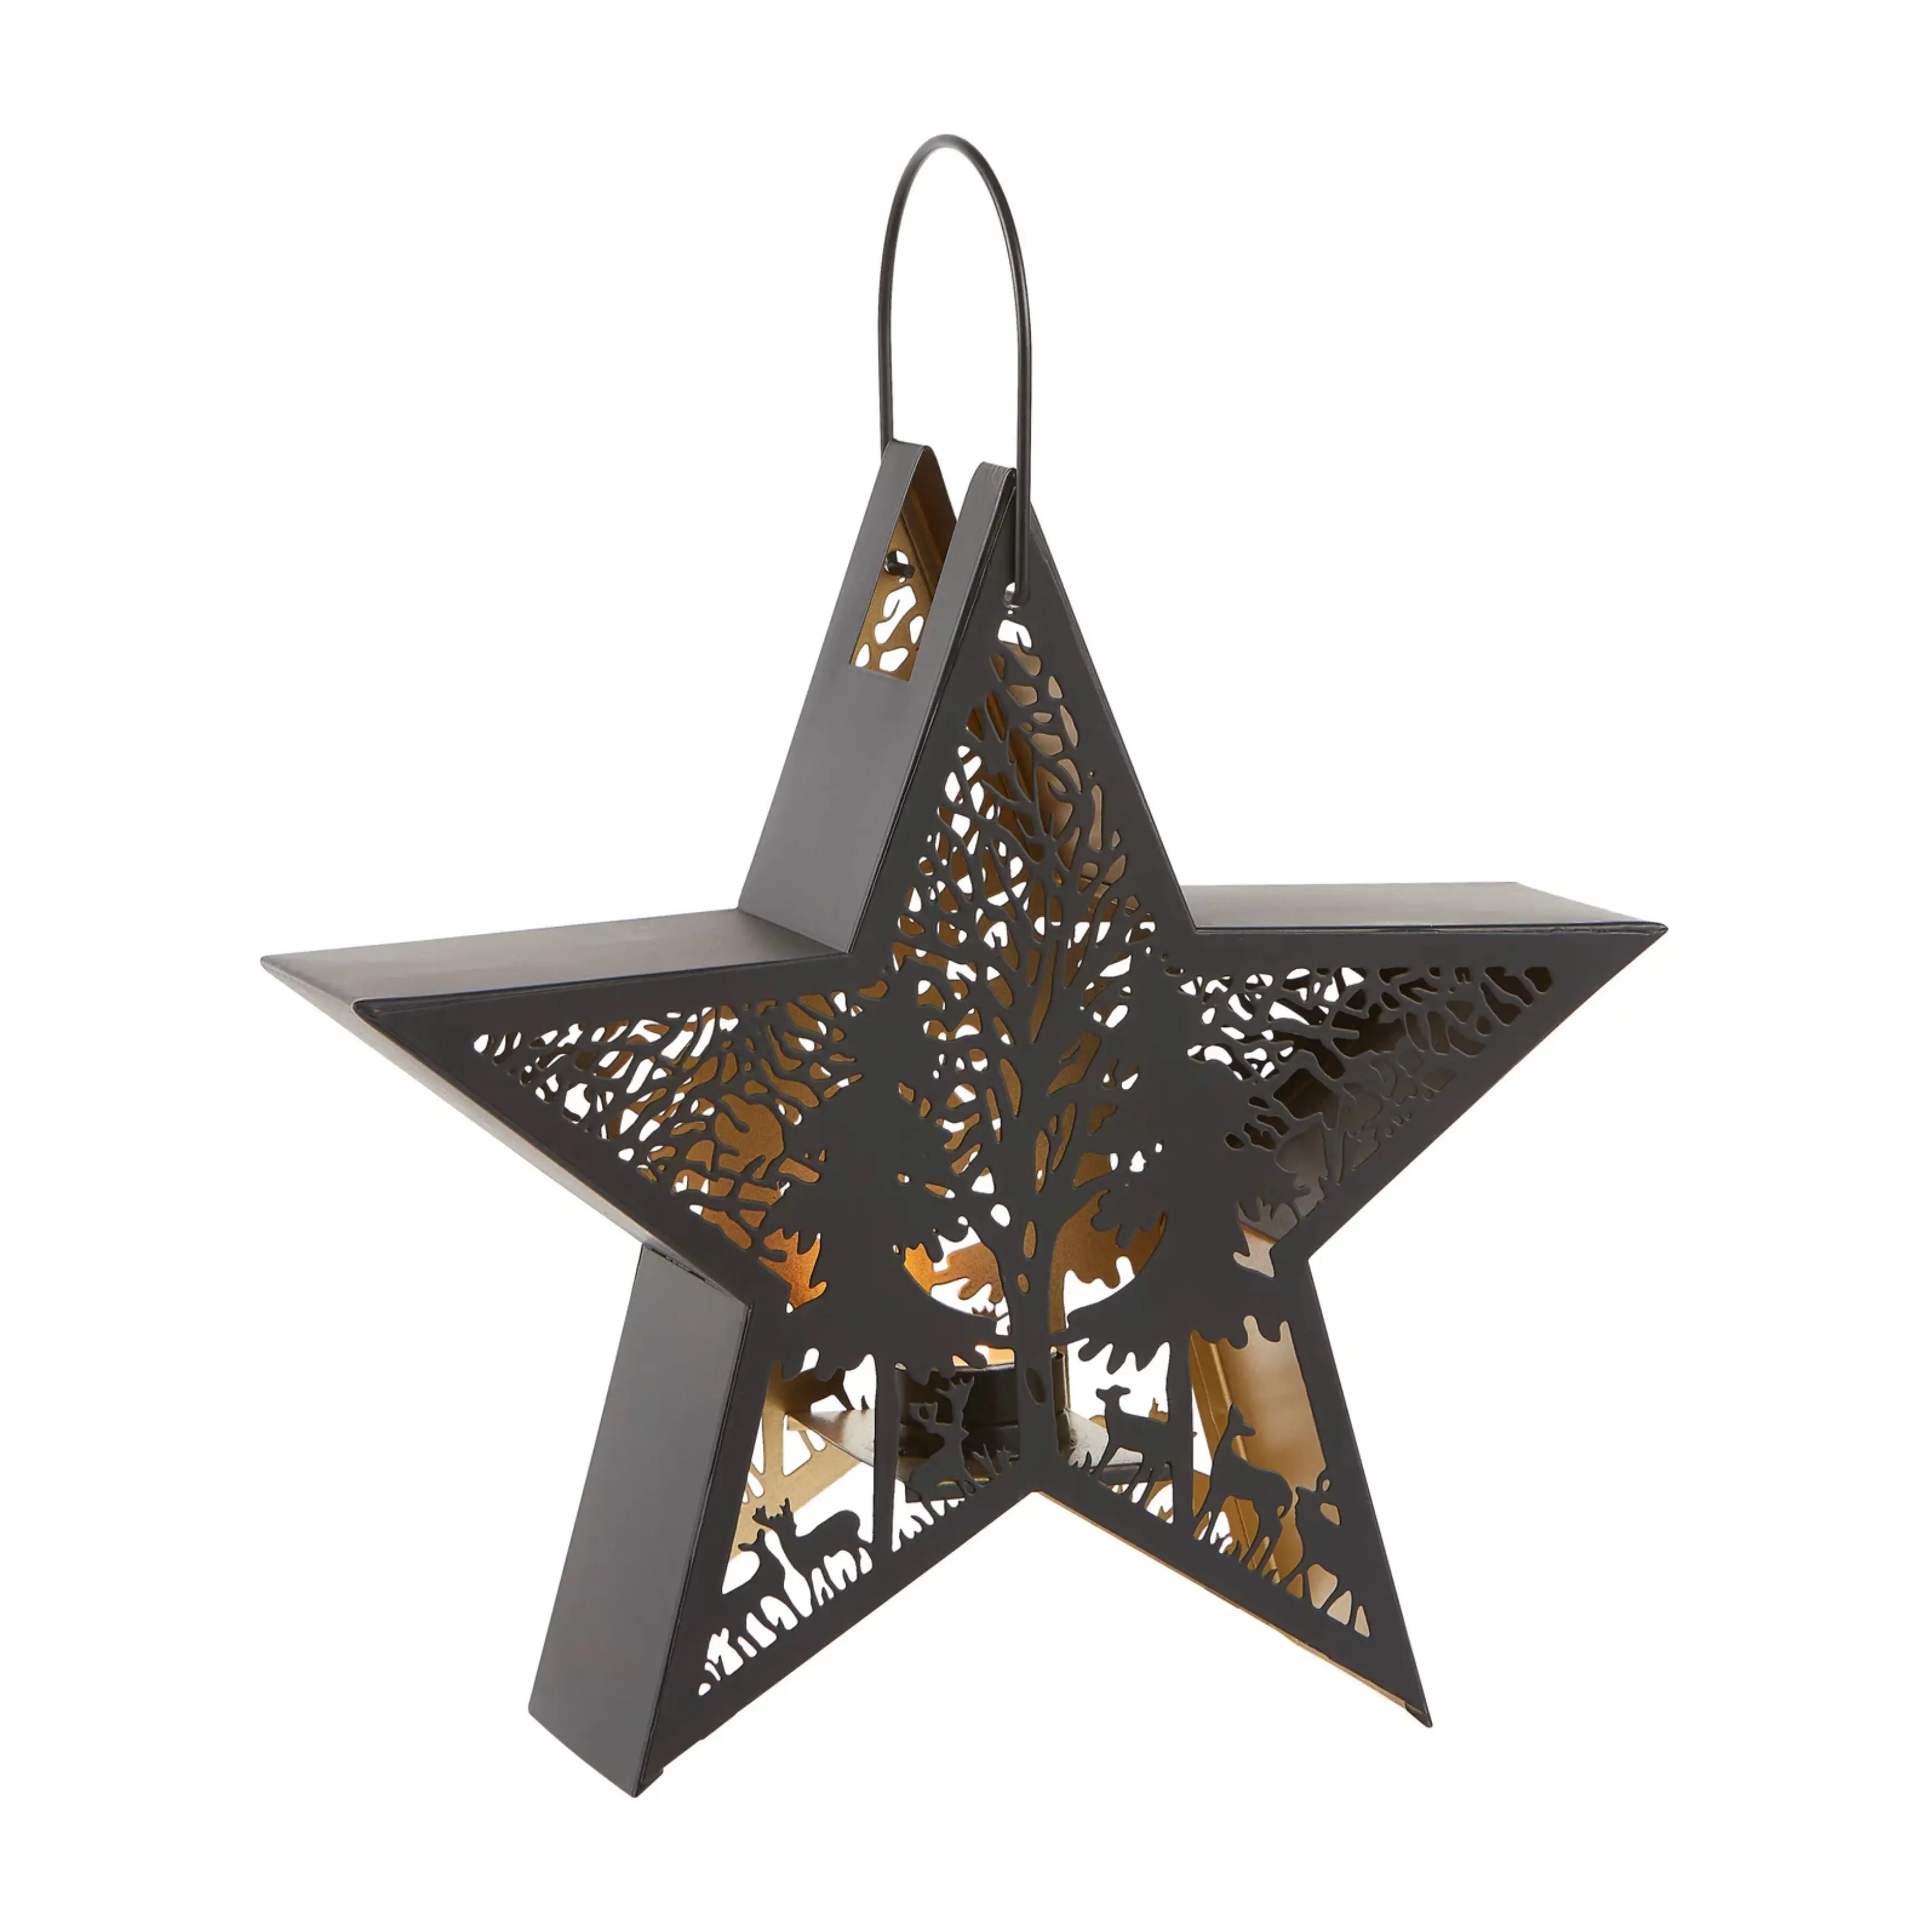 أحدث وصول لعيد الميلاد المجيد نجمة معدنية مزخرفة مغربي بأشجار وفانوس نجمي مصنوع يدويًا بتصميم قطع أنتيلوب